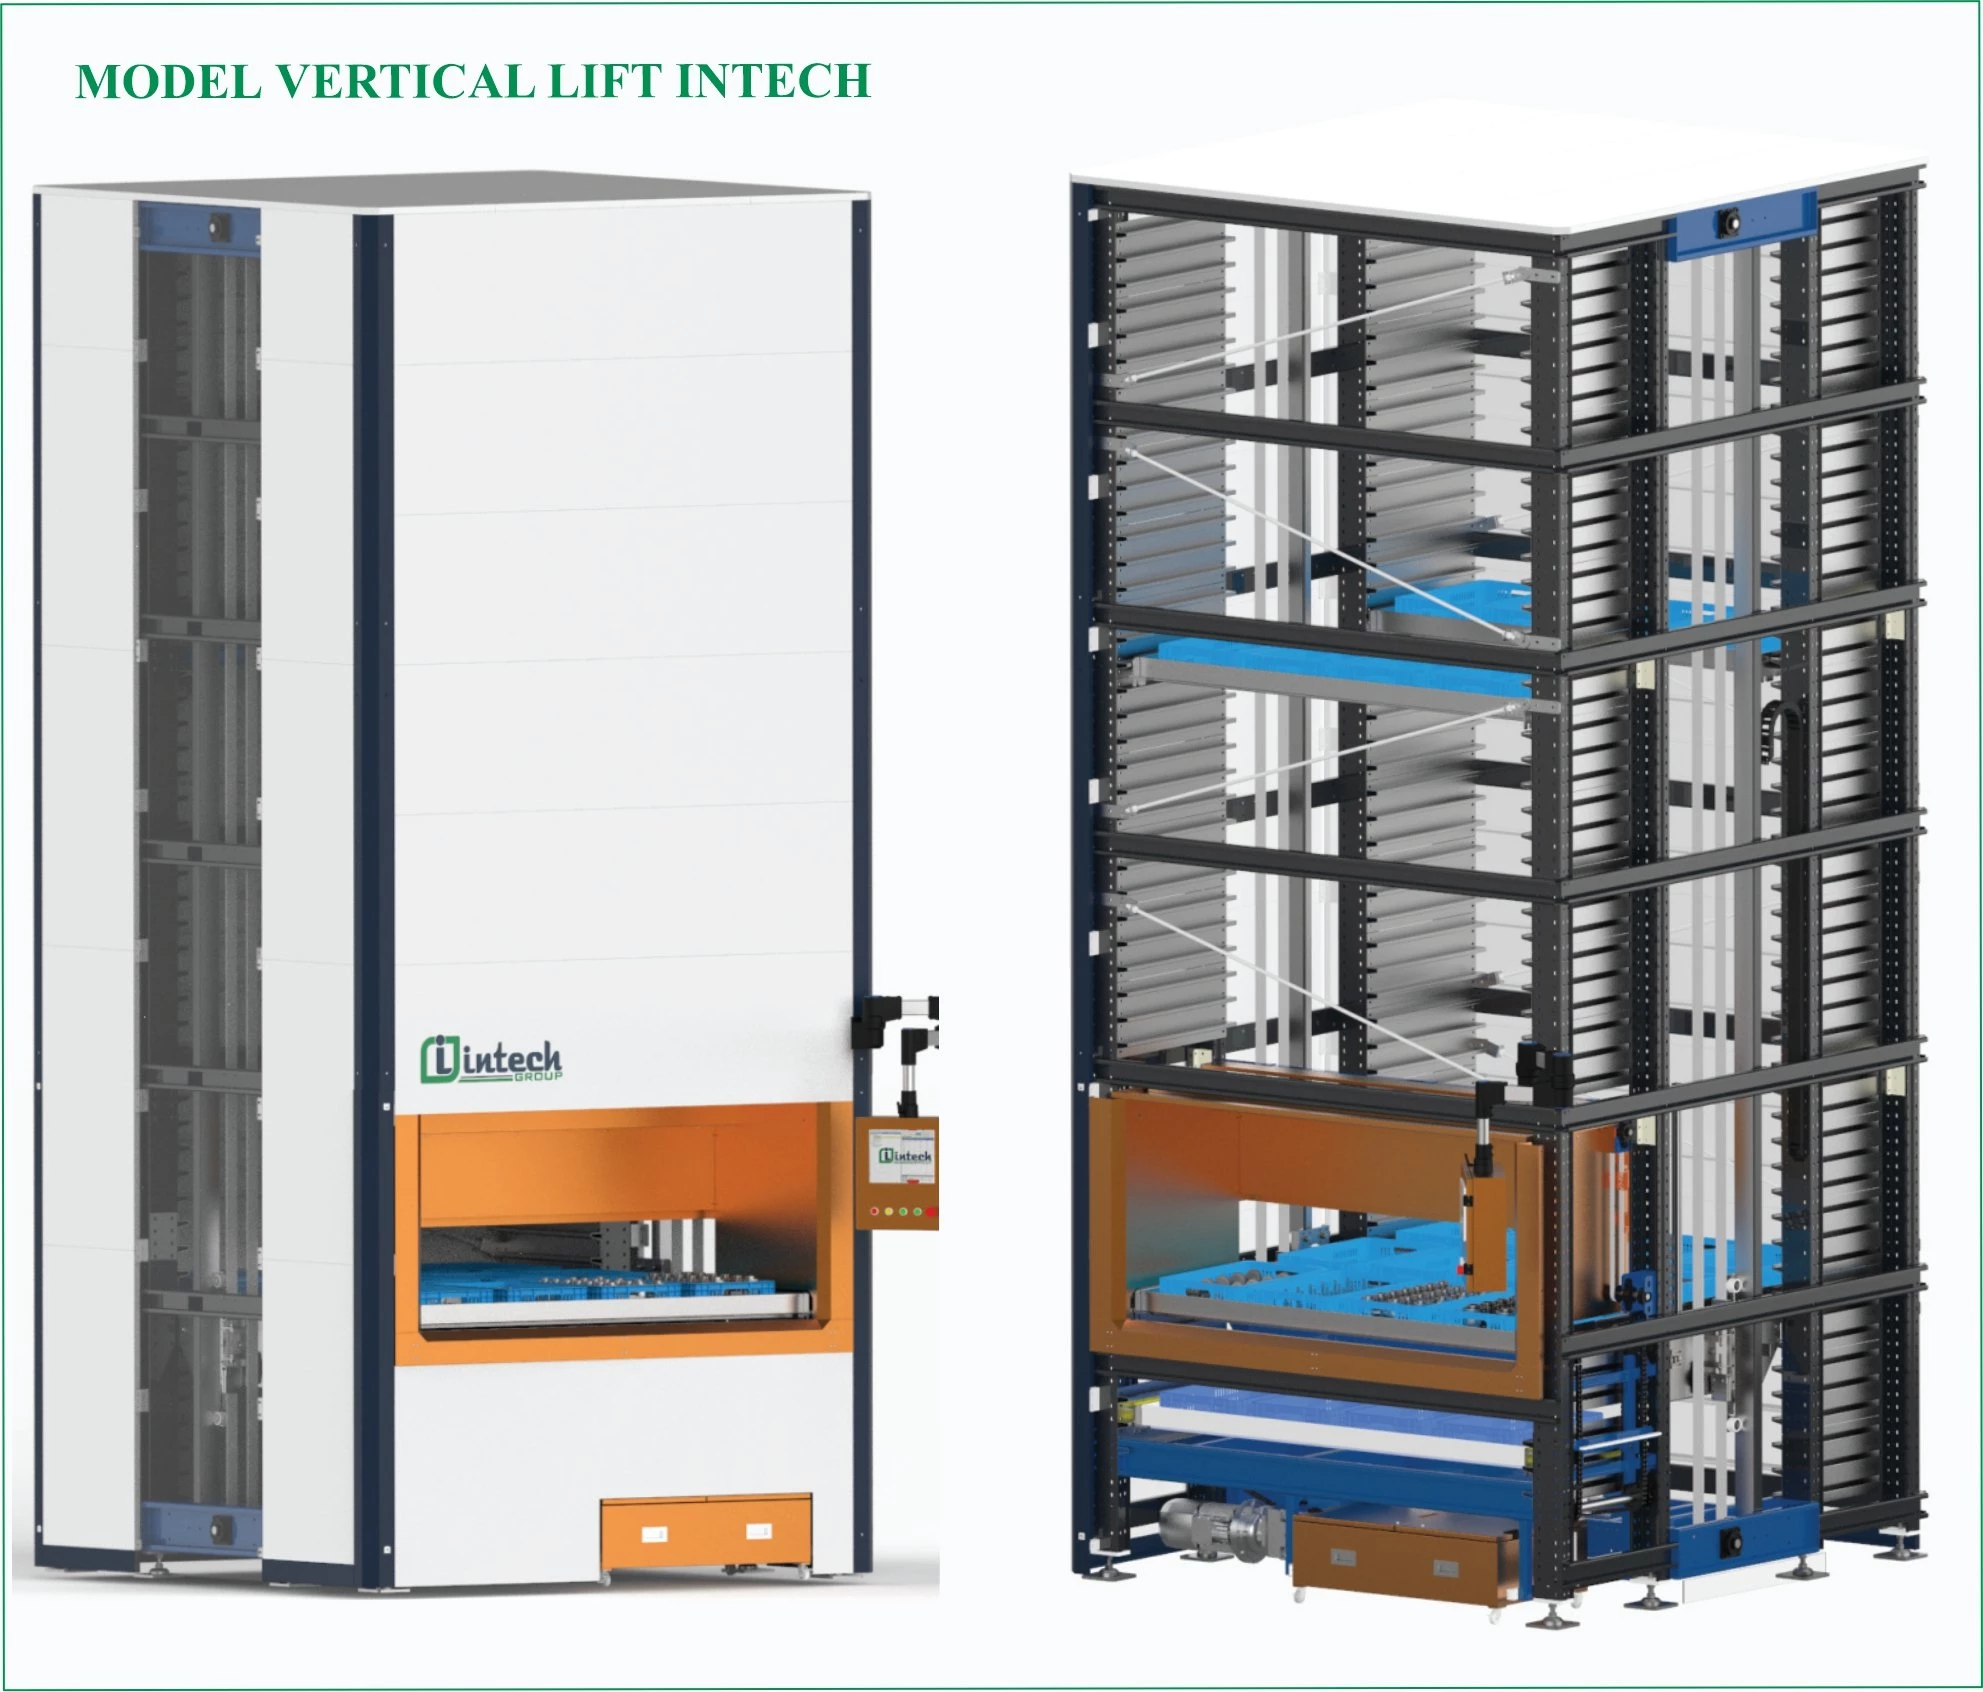 Nhà kho thông minh Model Vertical Lift Intech với chiều cao tối đa 8m, trọng tải mỗi khay 300kg, tốc độ di chuyển 60m/phút, ứng dụng trong ngành ô tô, điện, điện tử, dược phẩm, chế tạo.